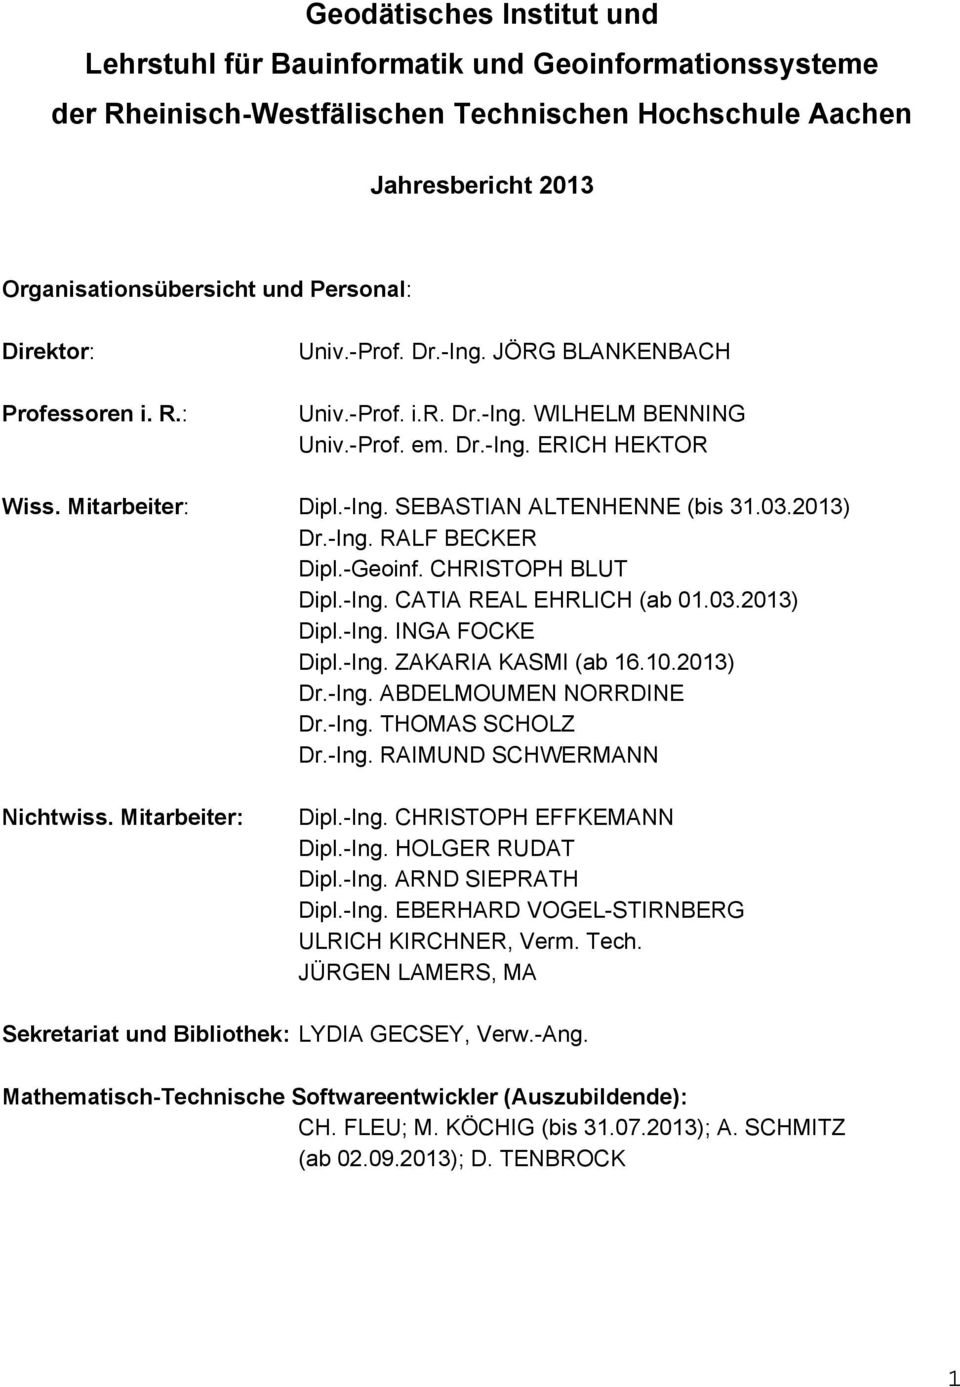 03.2013) Dr.-Ing. RALF BECKER Dipl.-Geoinf. CHRISTOPH BLUT Dipl.-Ing. CATIA REAL EHRLICH (ab 01.03.2013) Dipl.-Ing. INGA FOCKE Dipl.-Ing. ZAKARIA KASMI (ab 16.10.2013) Dr.-Ing. ABDELMOUMEN NORRDINE Dr.